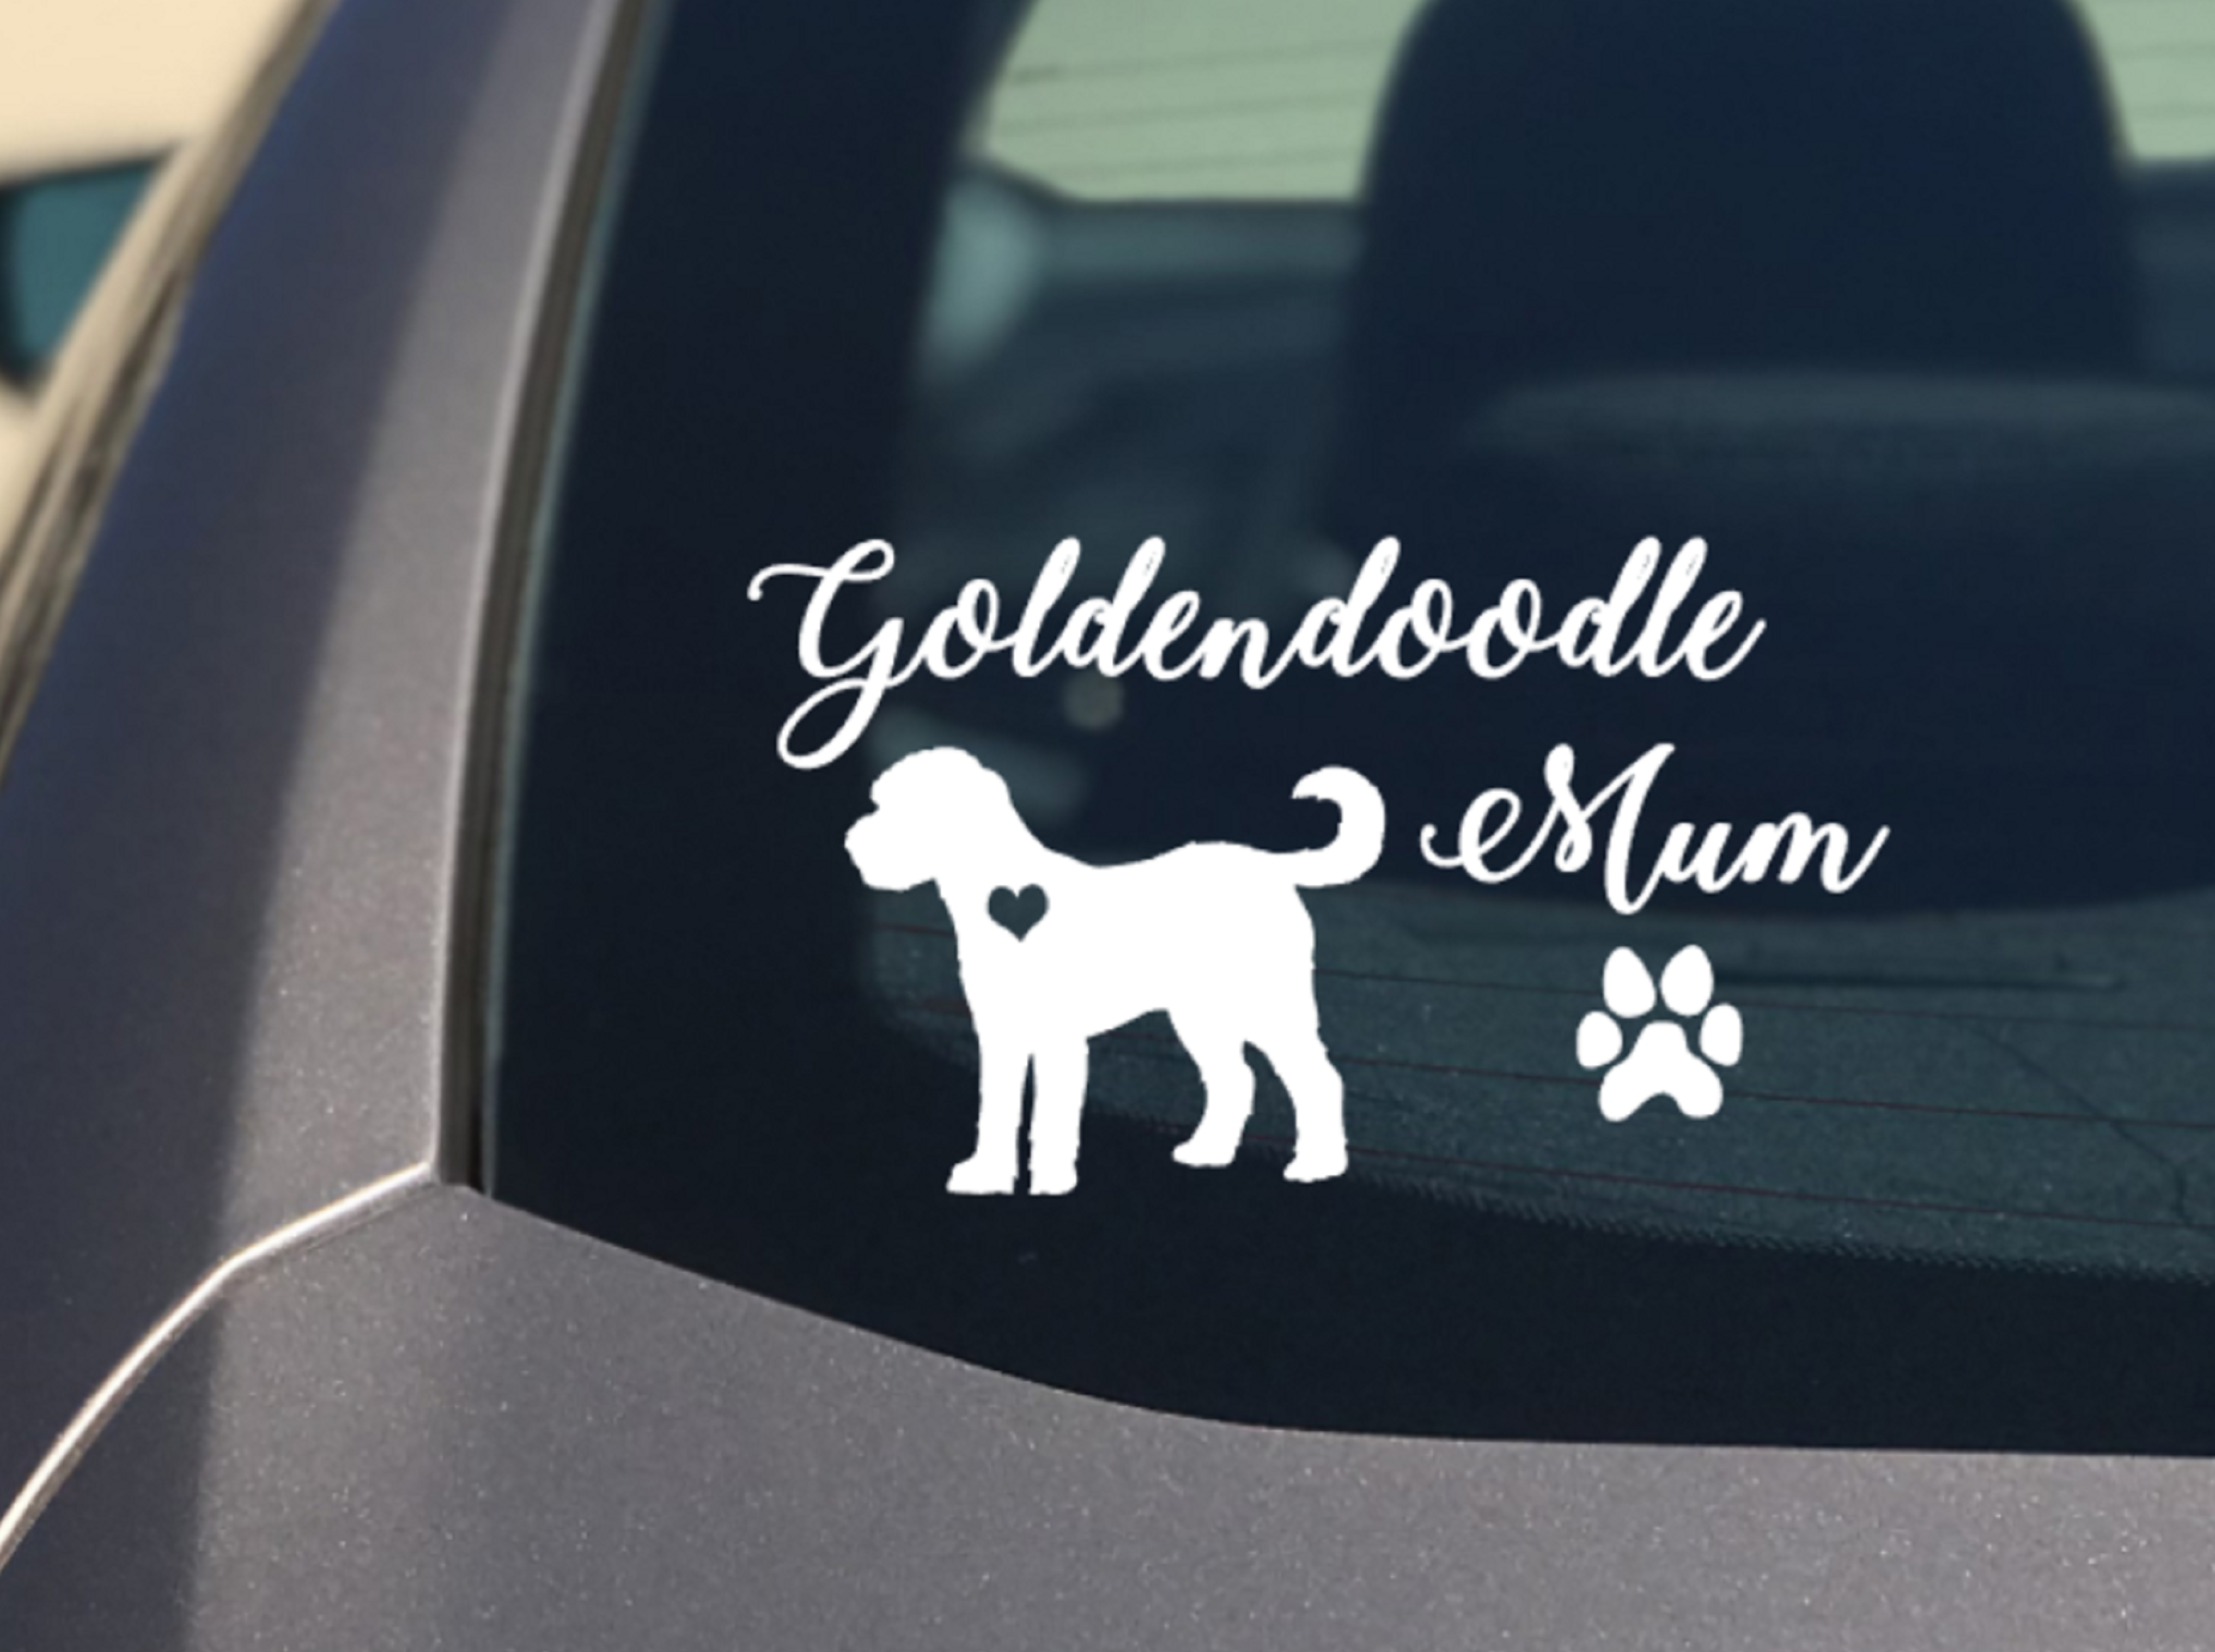 GoldenDoodle car sticker